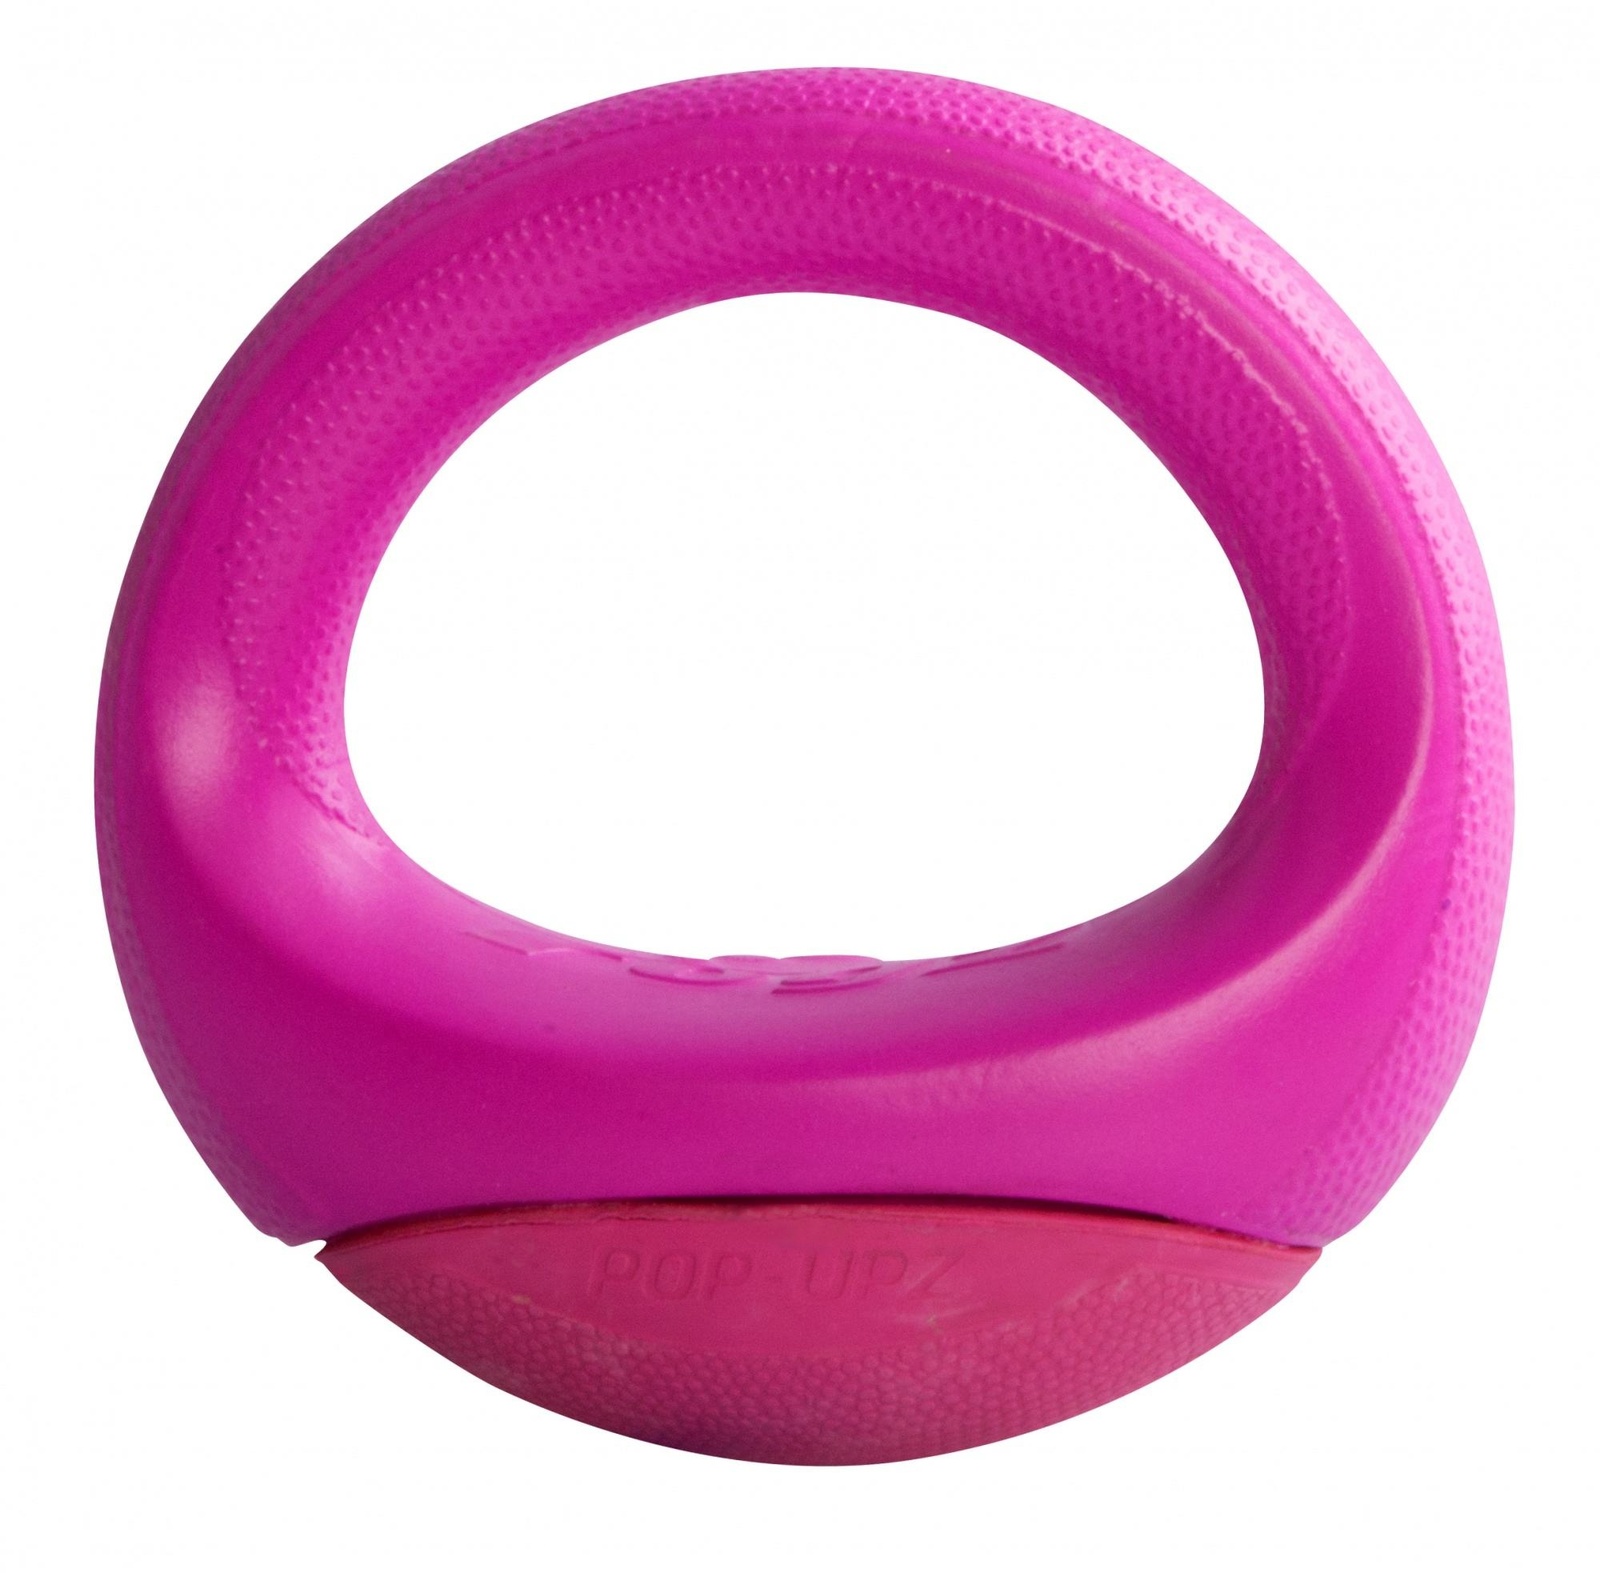 Rogz Rogz игрушка для собак кольцо-неваляшка, розовый (250 г) rogz мяч поймай меня squeekz прыгает на земле плавает в воде 64 мм синий